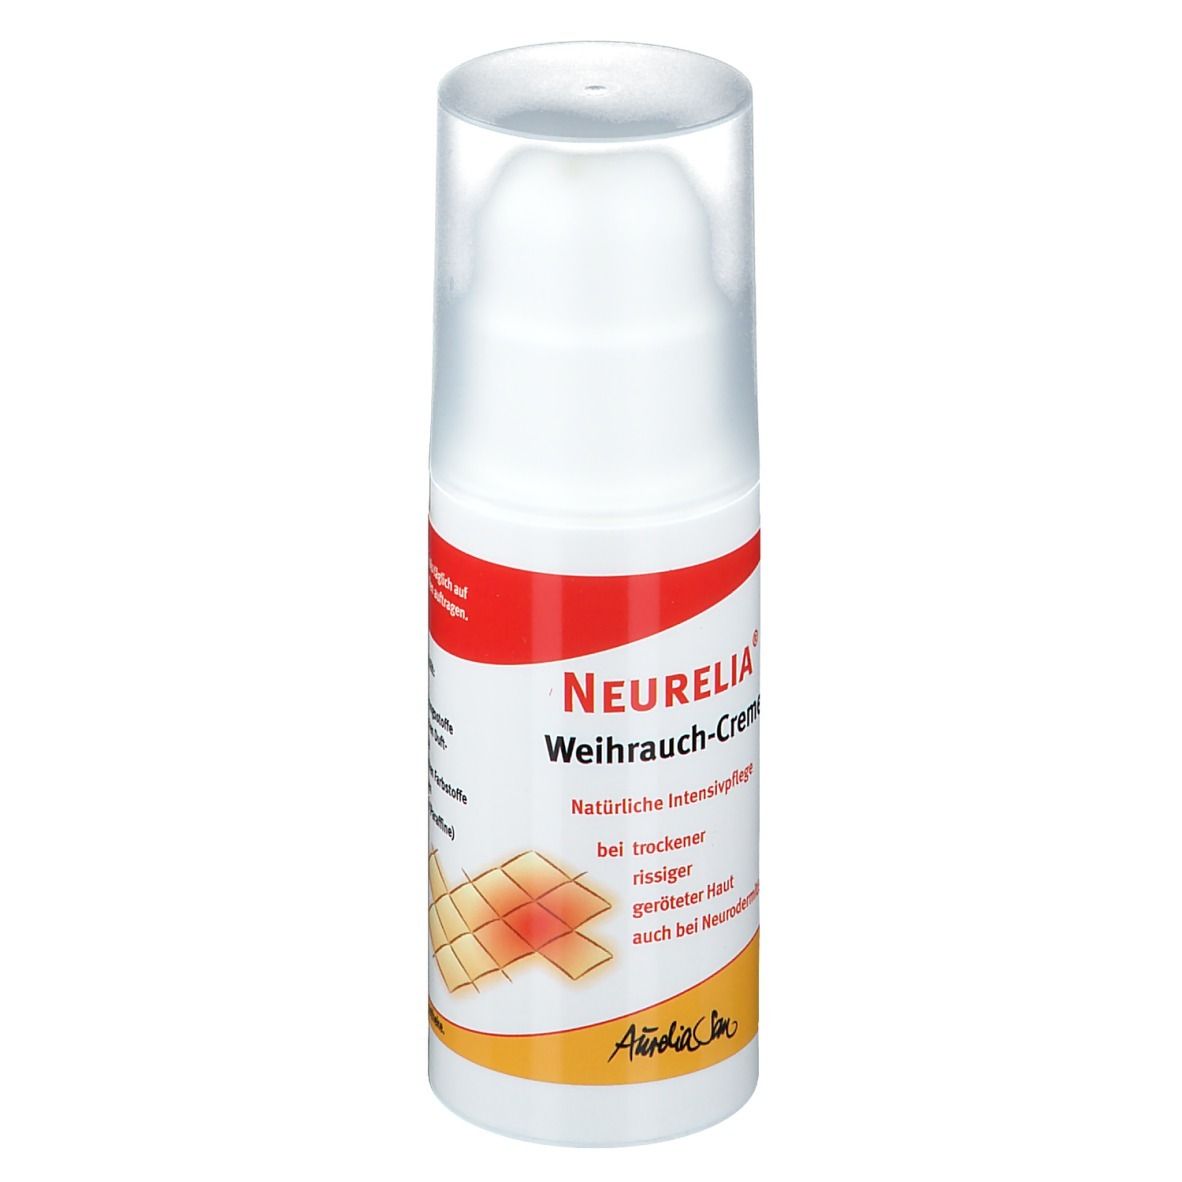 Neurelia® Weihrauch-Creme